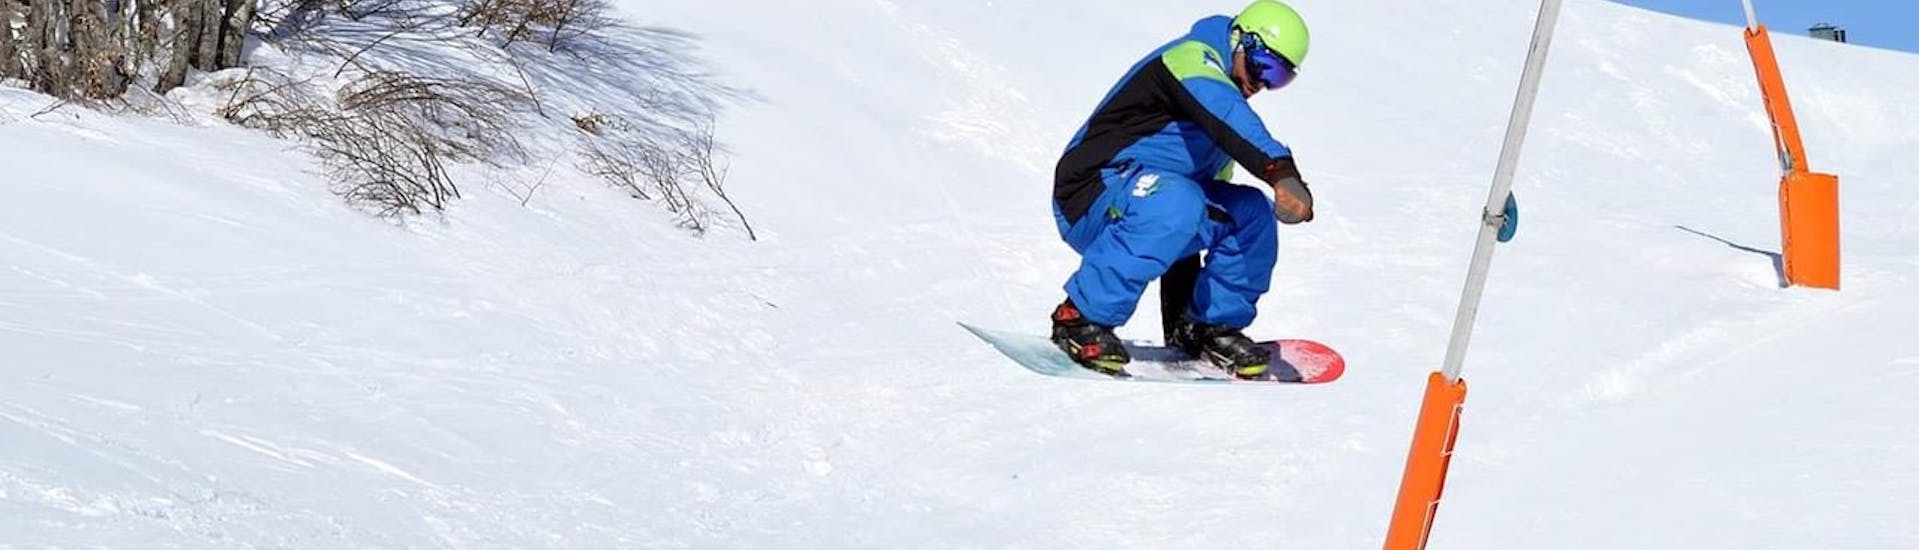 Snowboardkurs ab 16 Jahren für Anfänger.